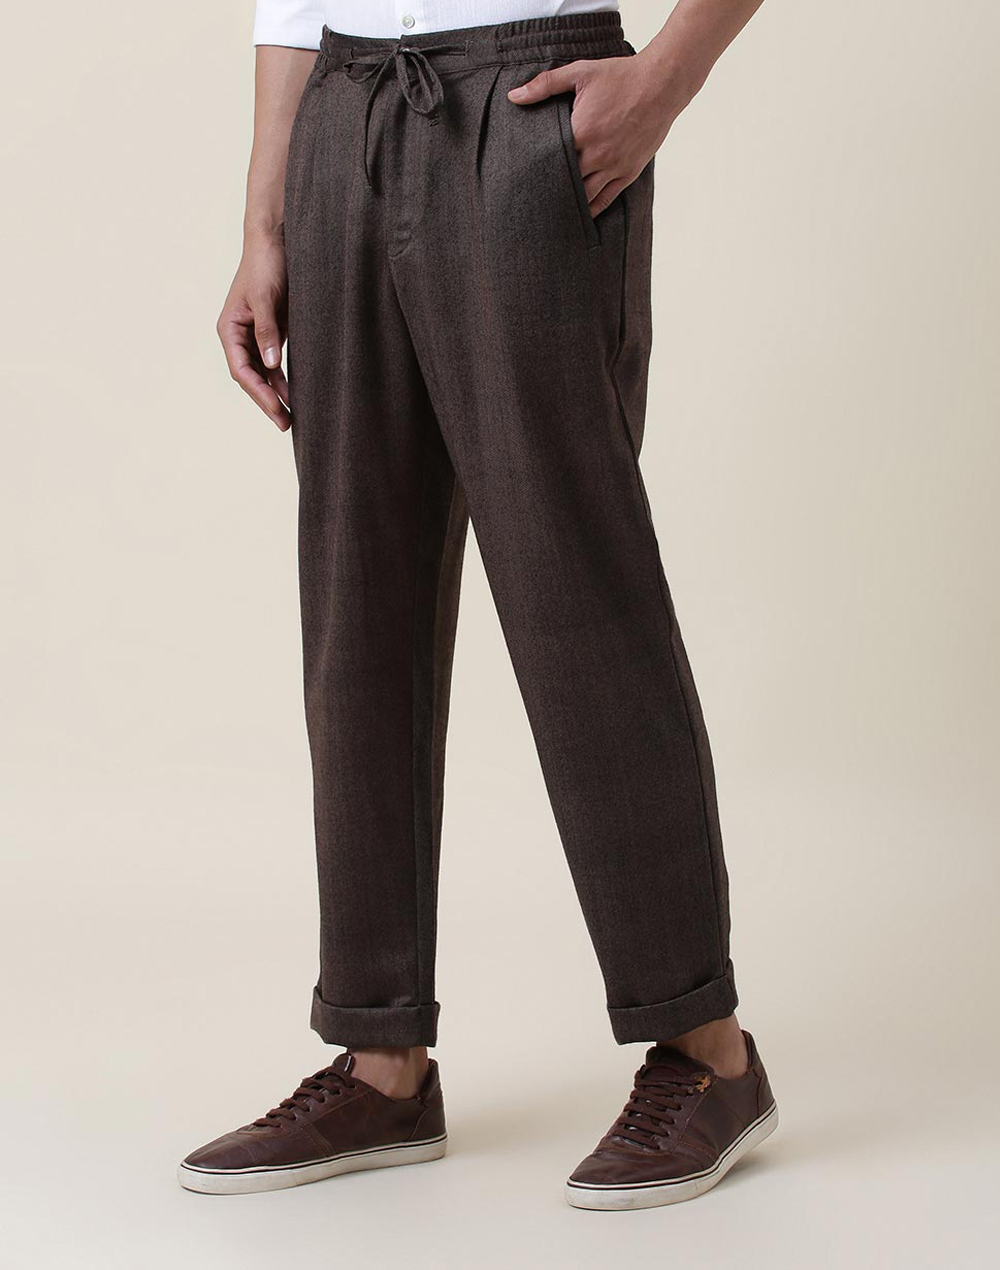 Buy Grey Cotton Drawstring Pants for Men Online at Fabindia